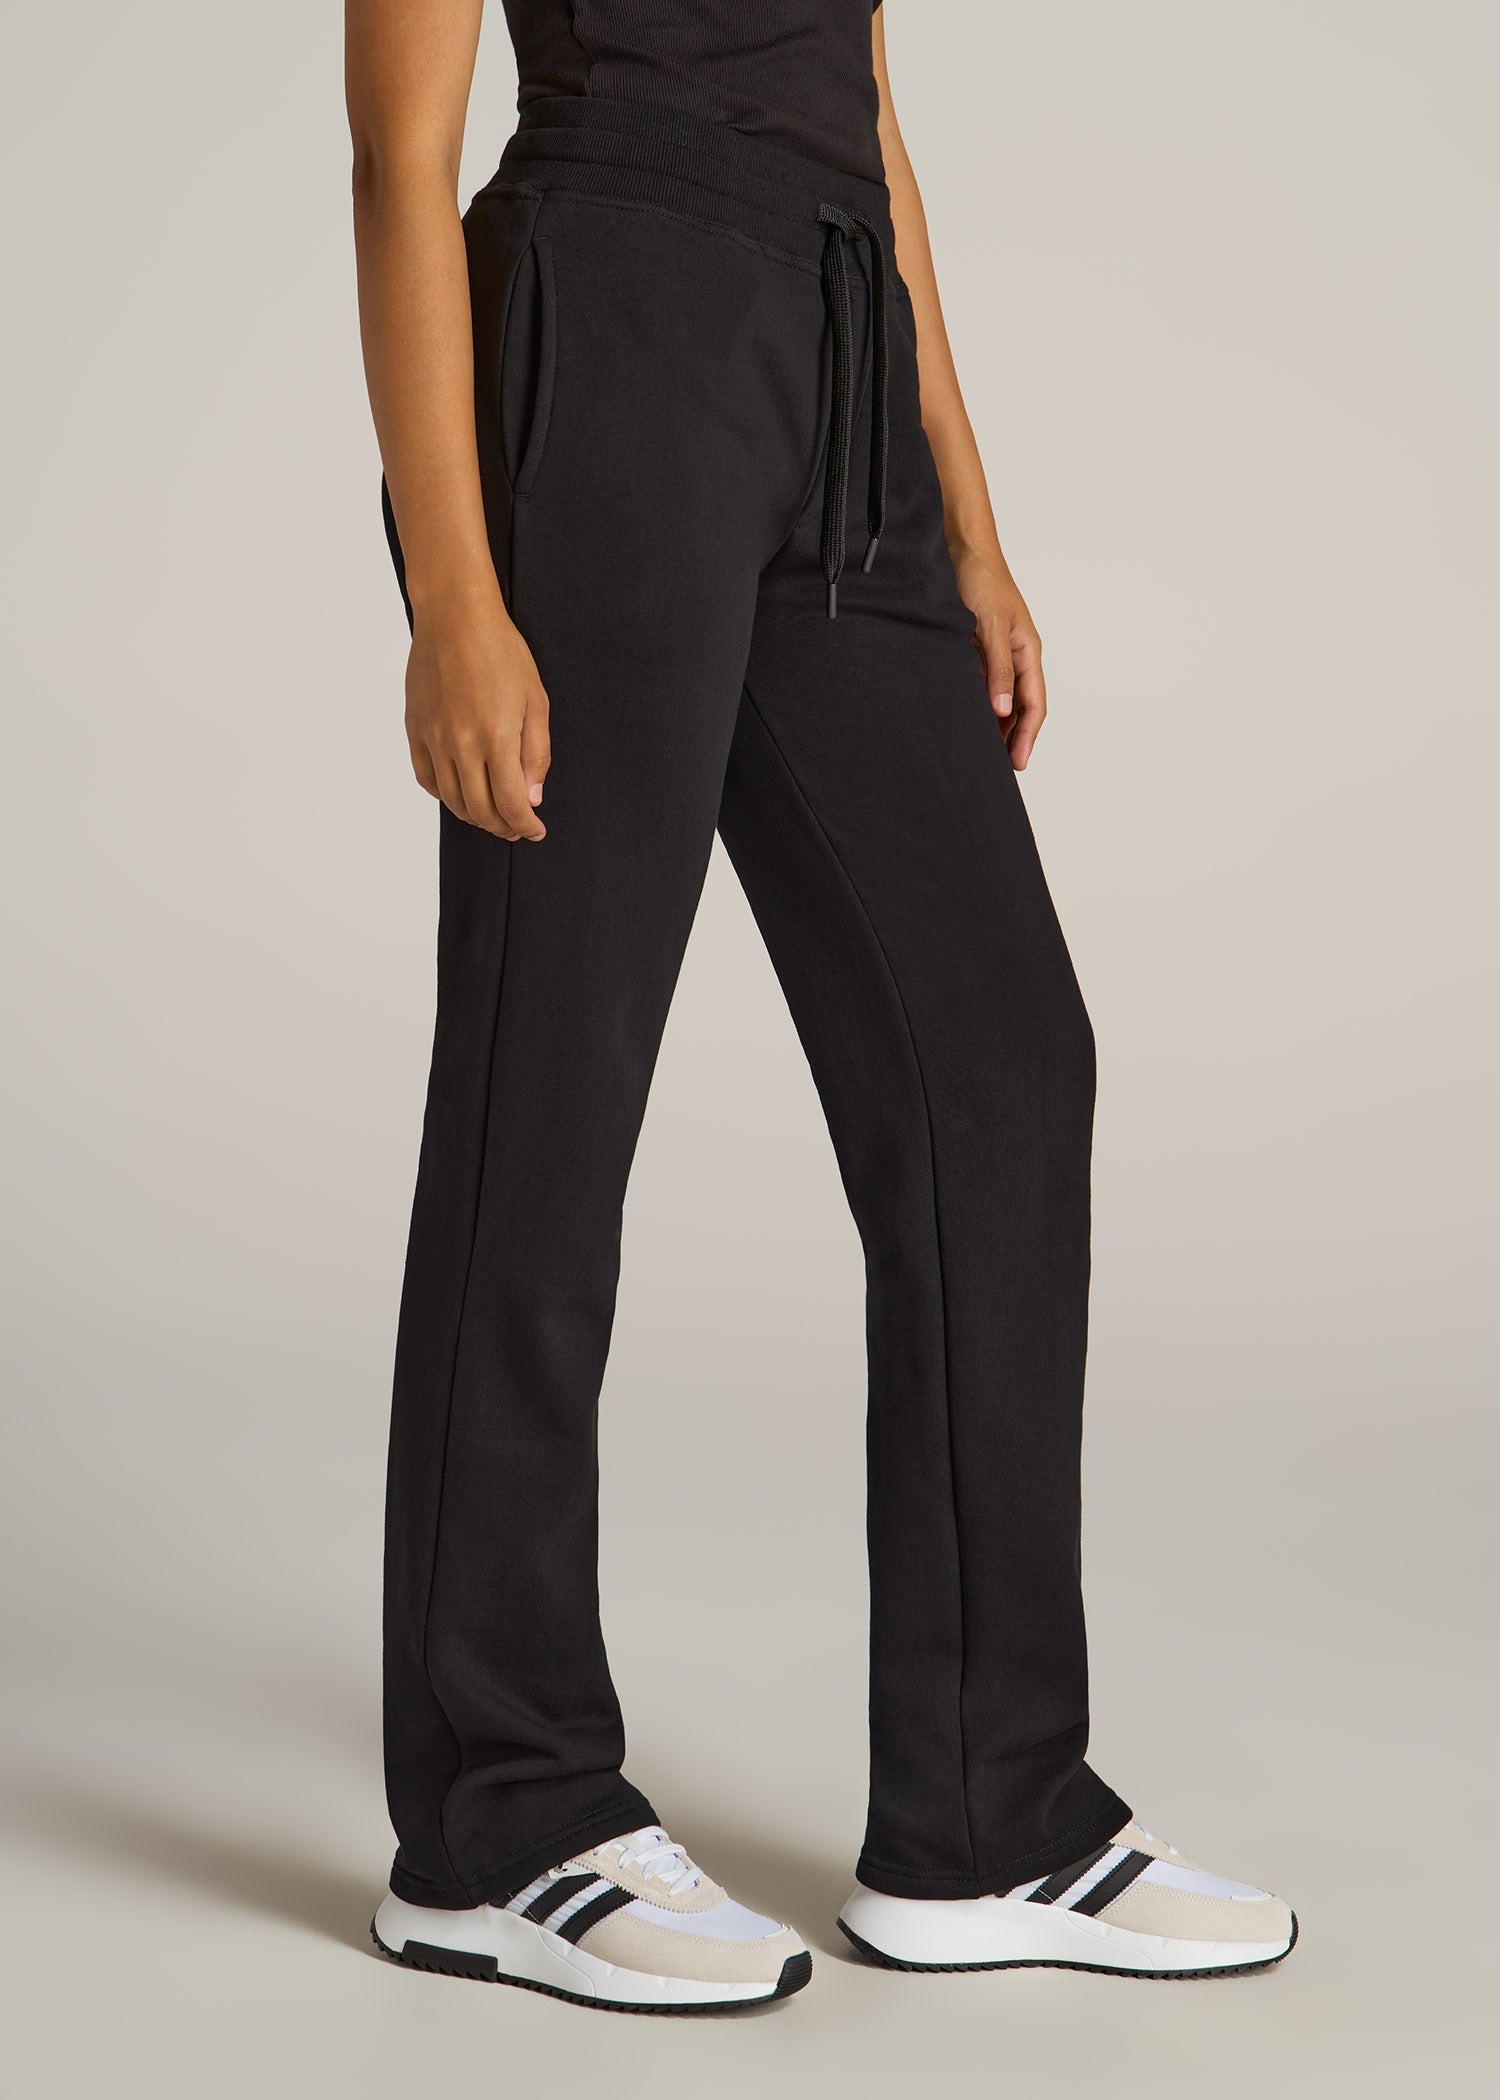 Tall Sweatpants for Women: Fleece Open Bottom Pants Black – American Tall